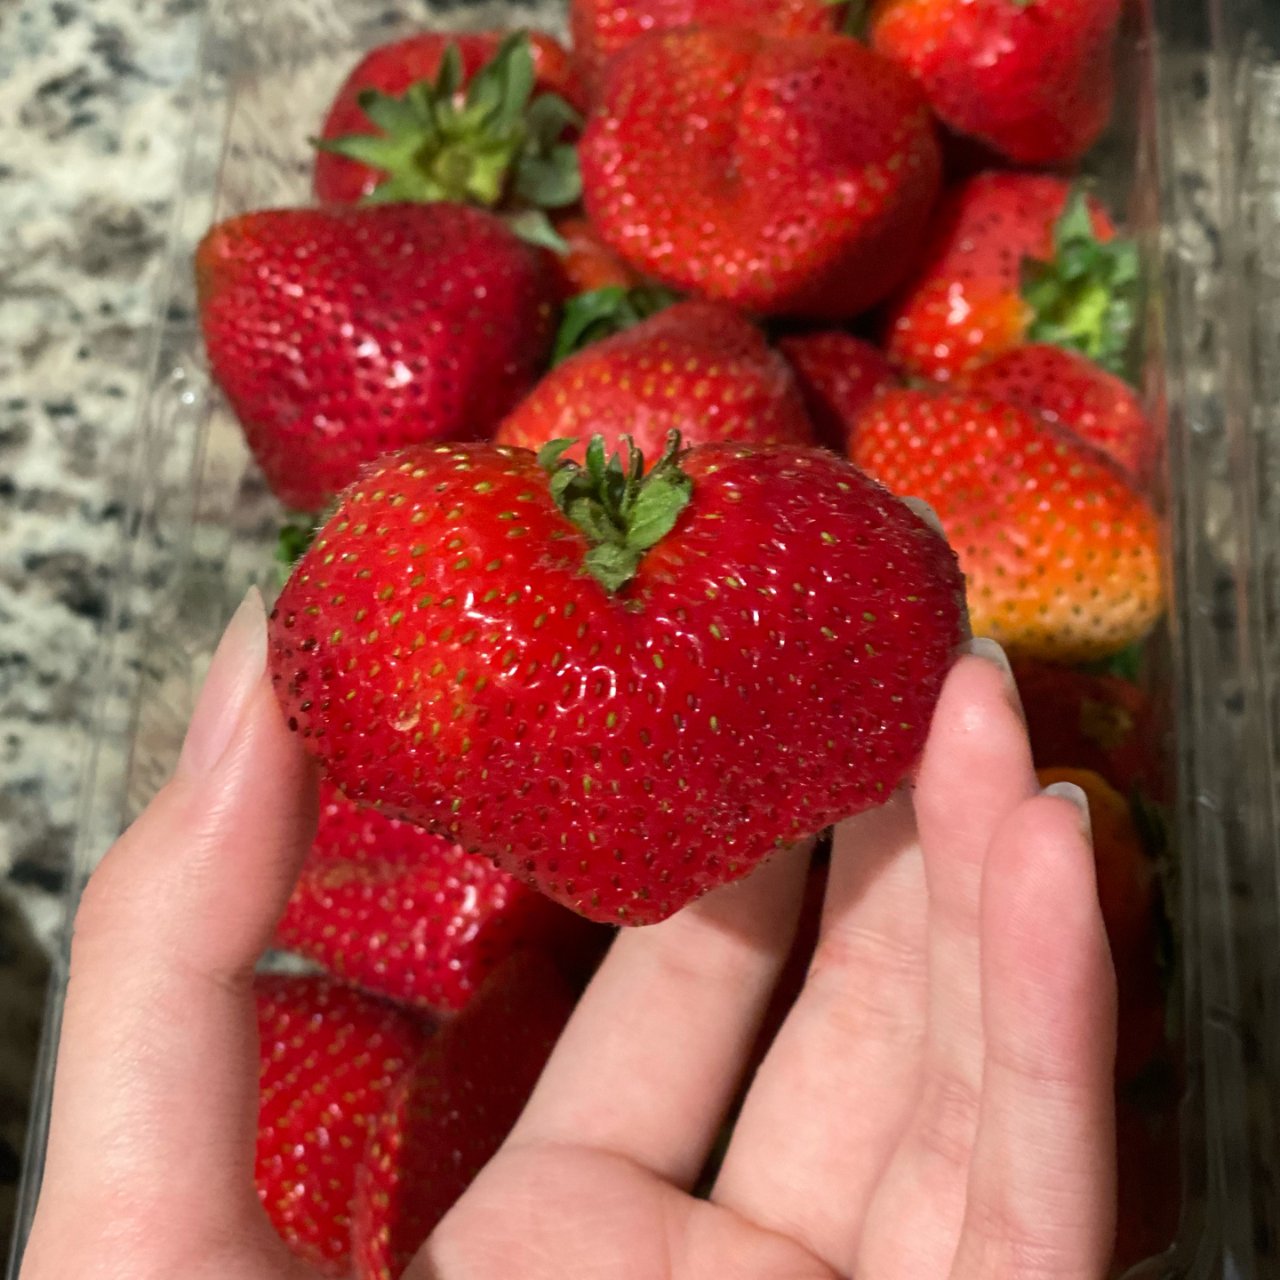 Costco草莓季 偶然买到的心形大草莓...